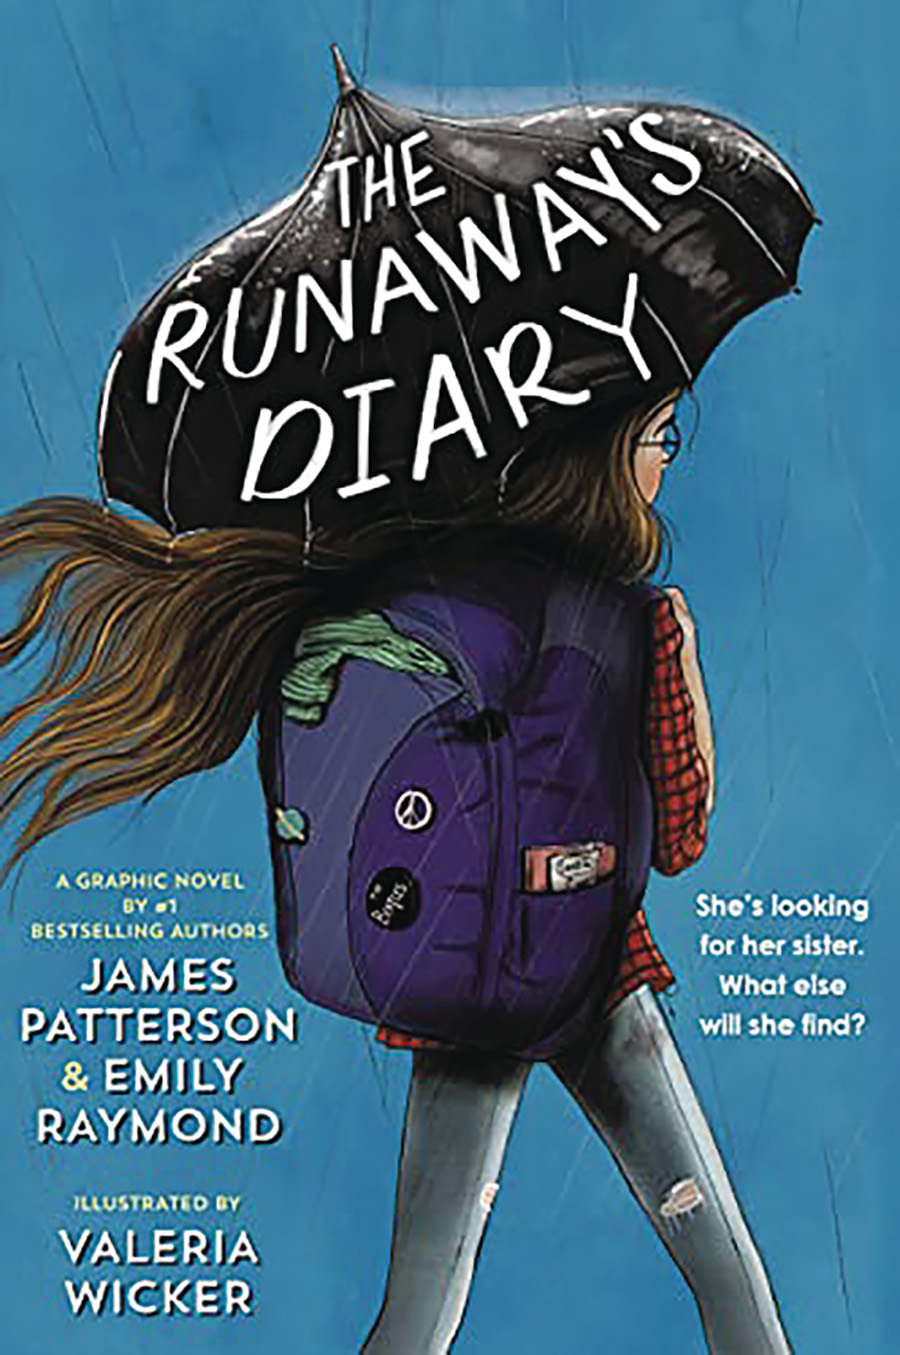 Runaways Diary HC